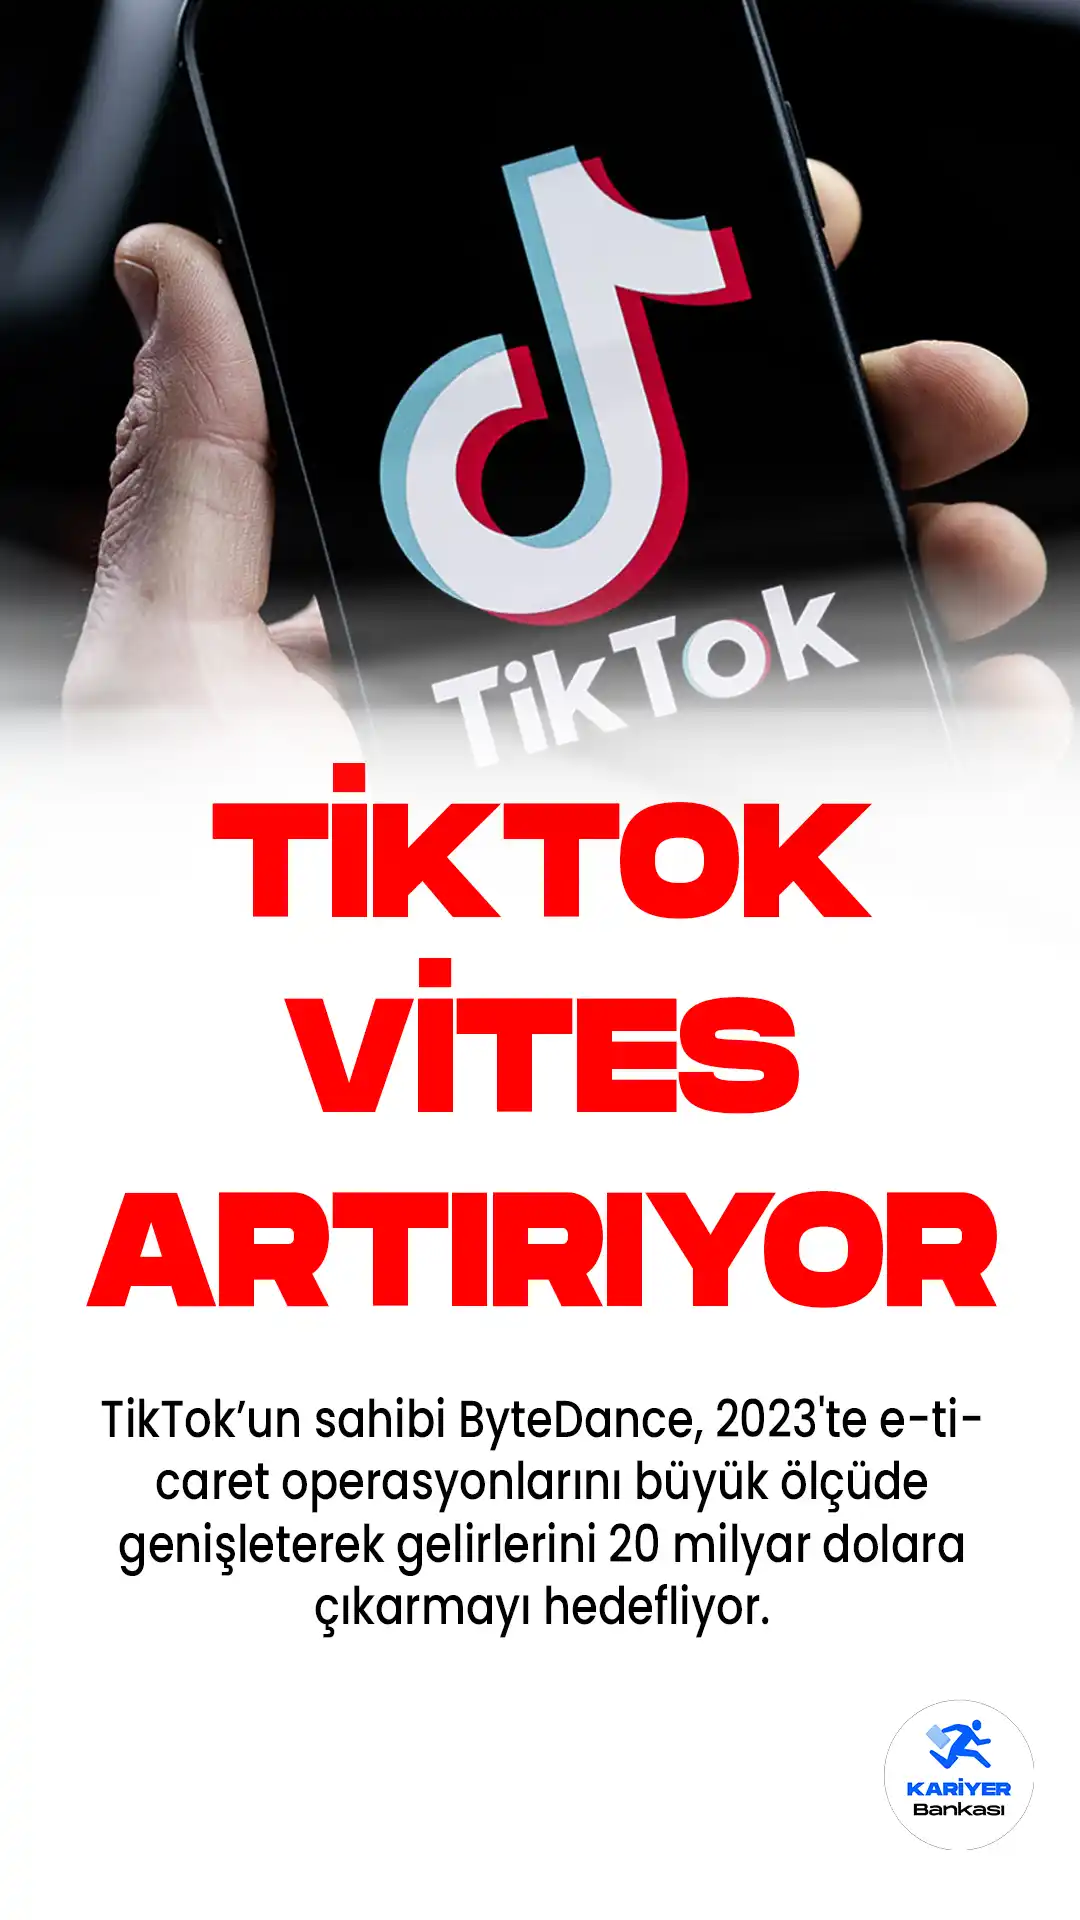 TikTok'un sahibi ByteDance, 2023'te e-ticaret operasyonlarını büyük ölçüde genişleterek gelirlerini 20 milyar dolara çıkarmayı hedefliyor.